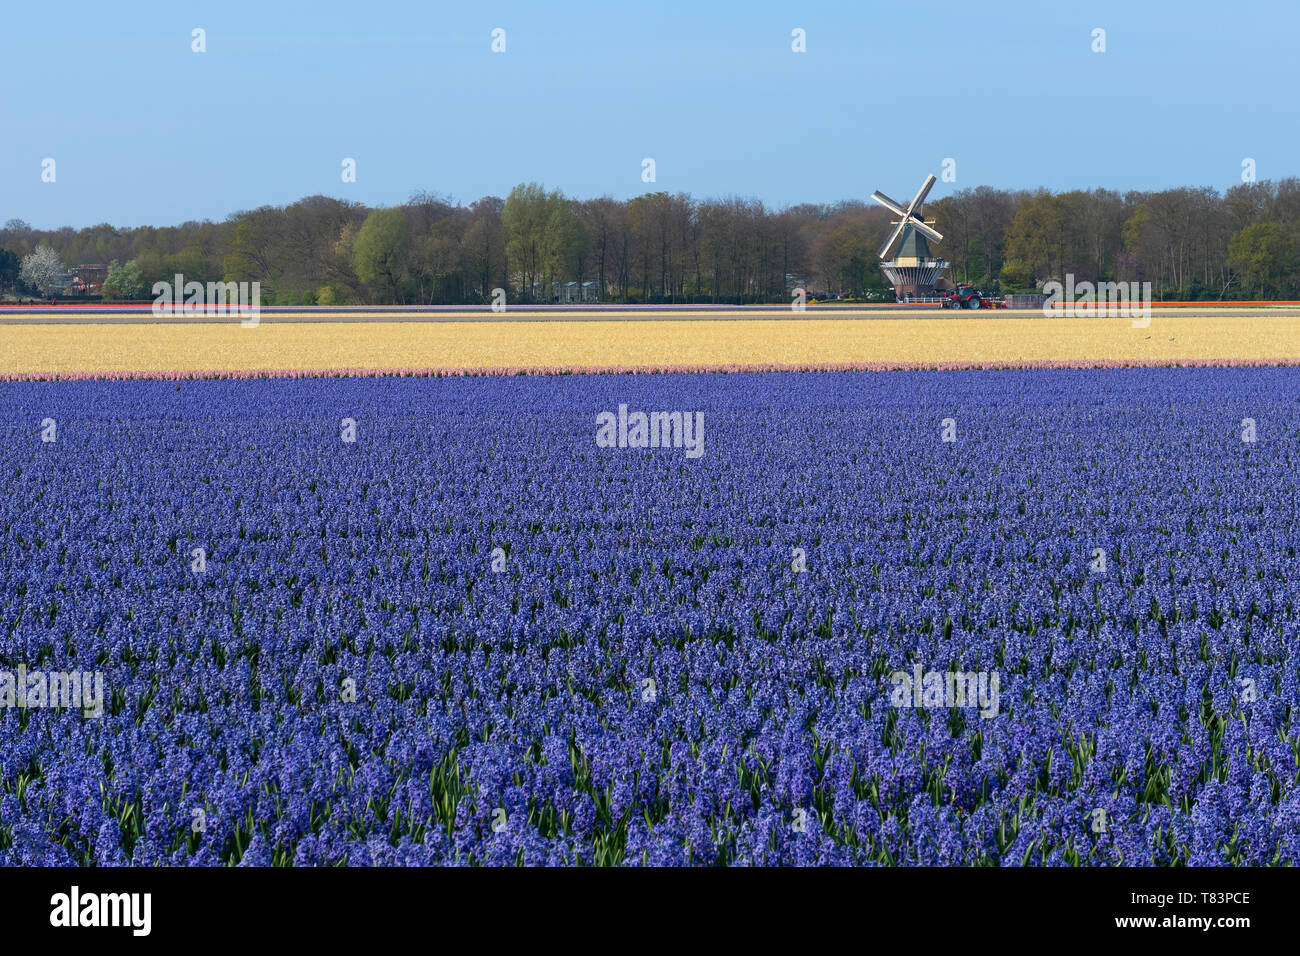 Lisse, Holanda - 18 de abril de 2019: Jacinto holandés tradicional campo con flores púrpura y un molino de viento en el fondo Foto de stock